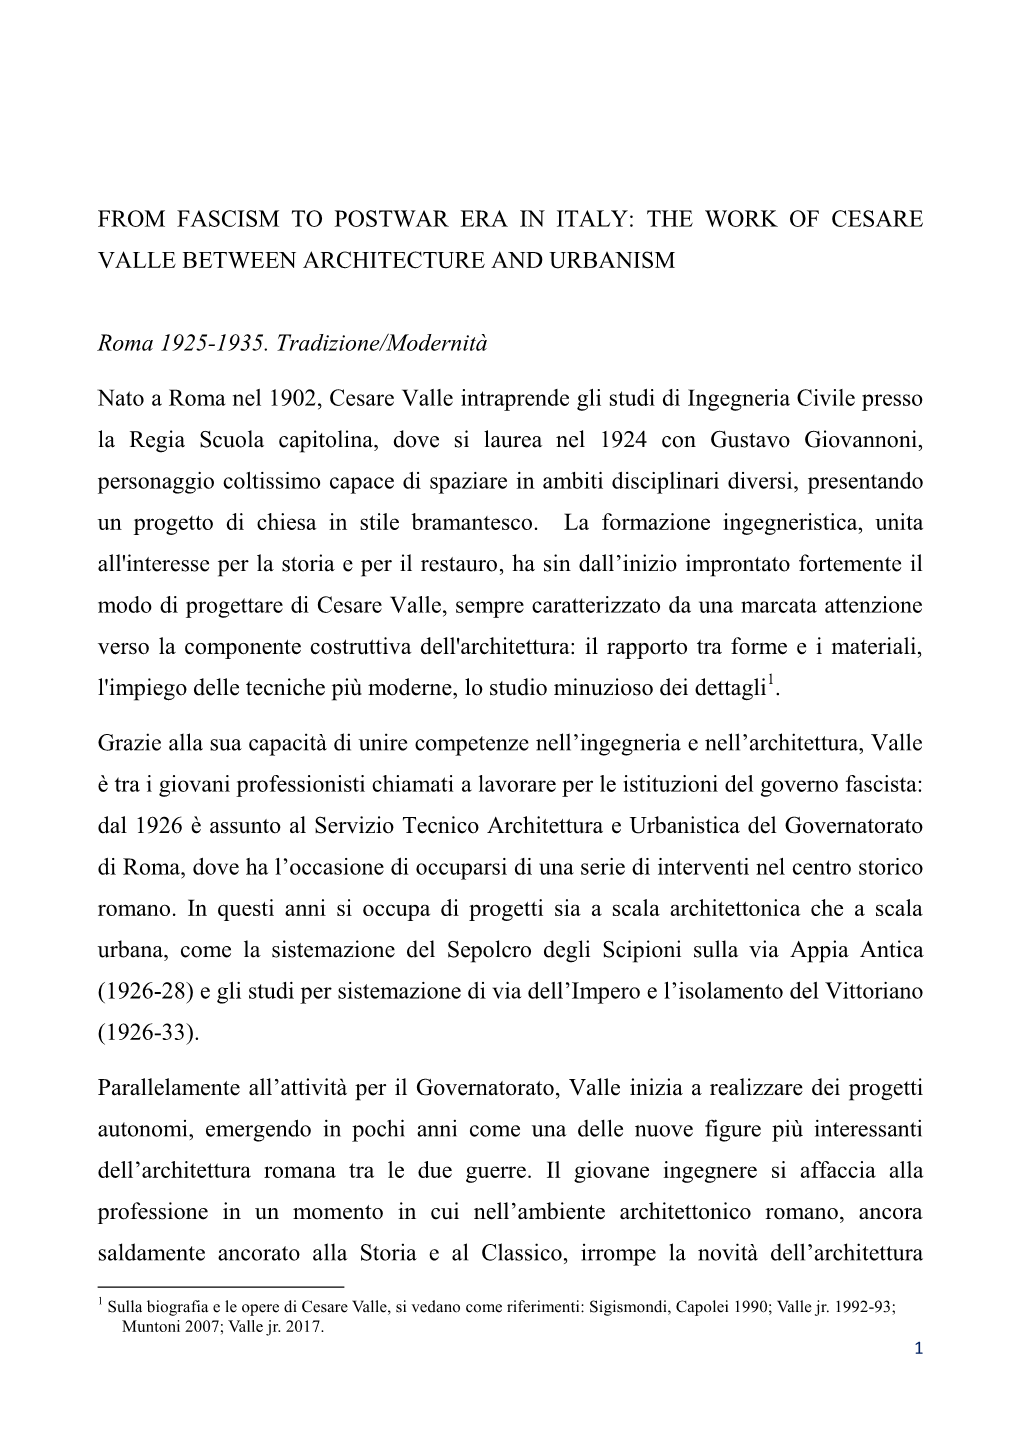 Cesare Valle Urbanista: Dalle Città Di Fondazione Alla Pianificazione Territoriale in Italia Nel Secondo Dopoguerra